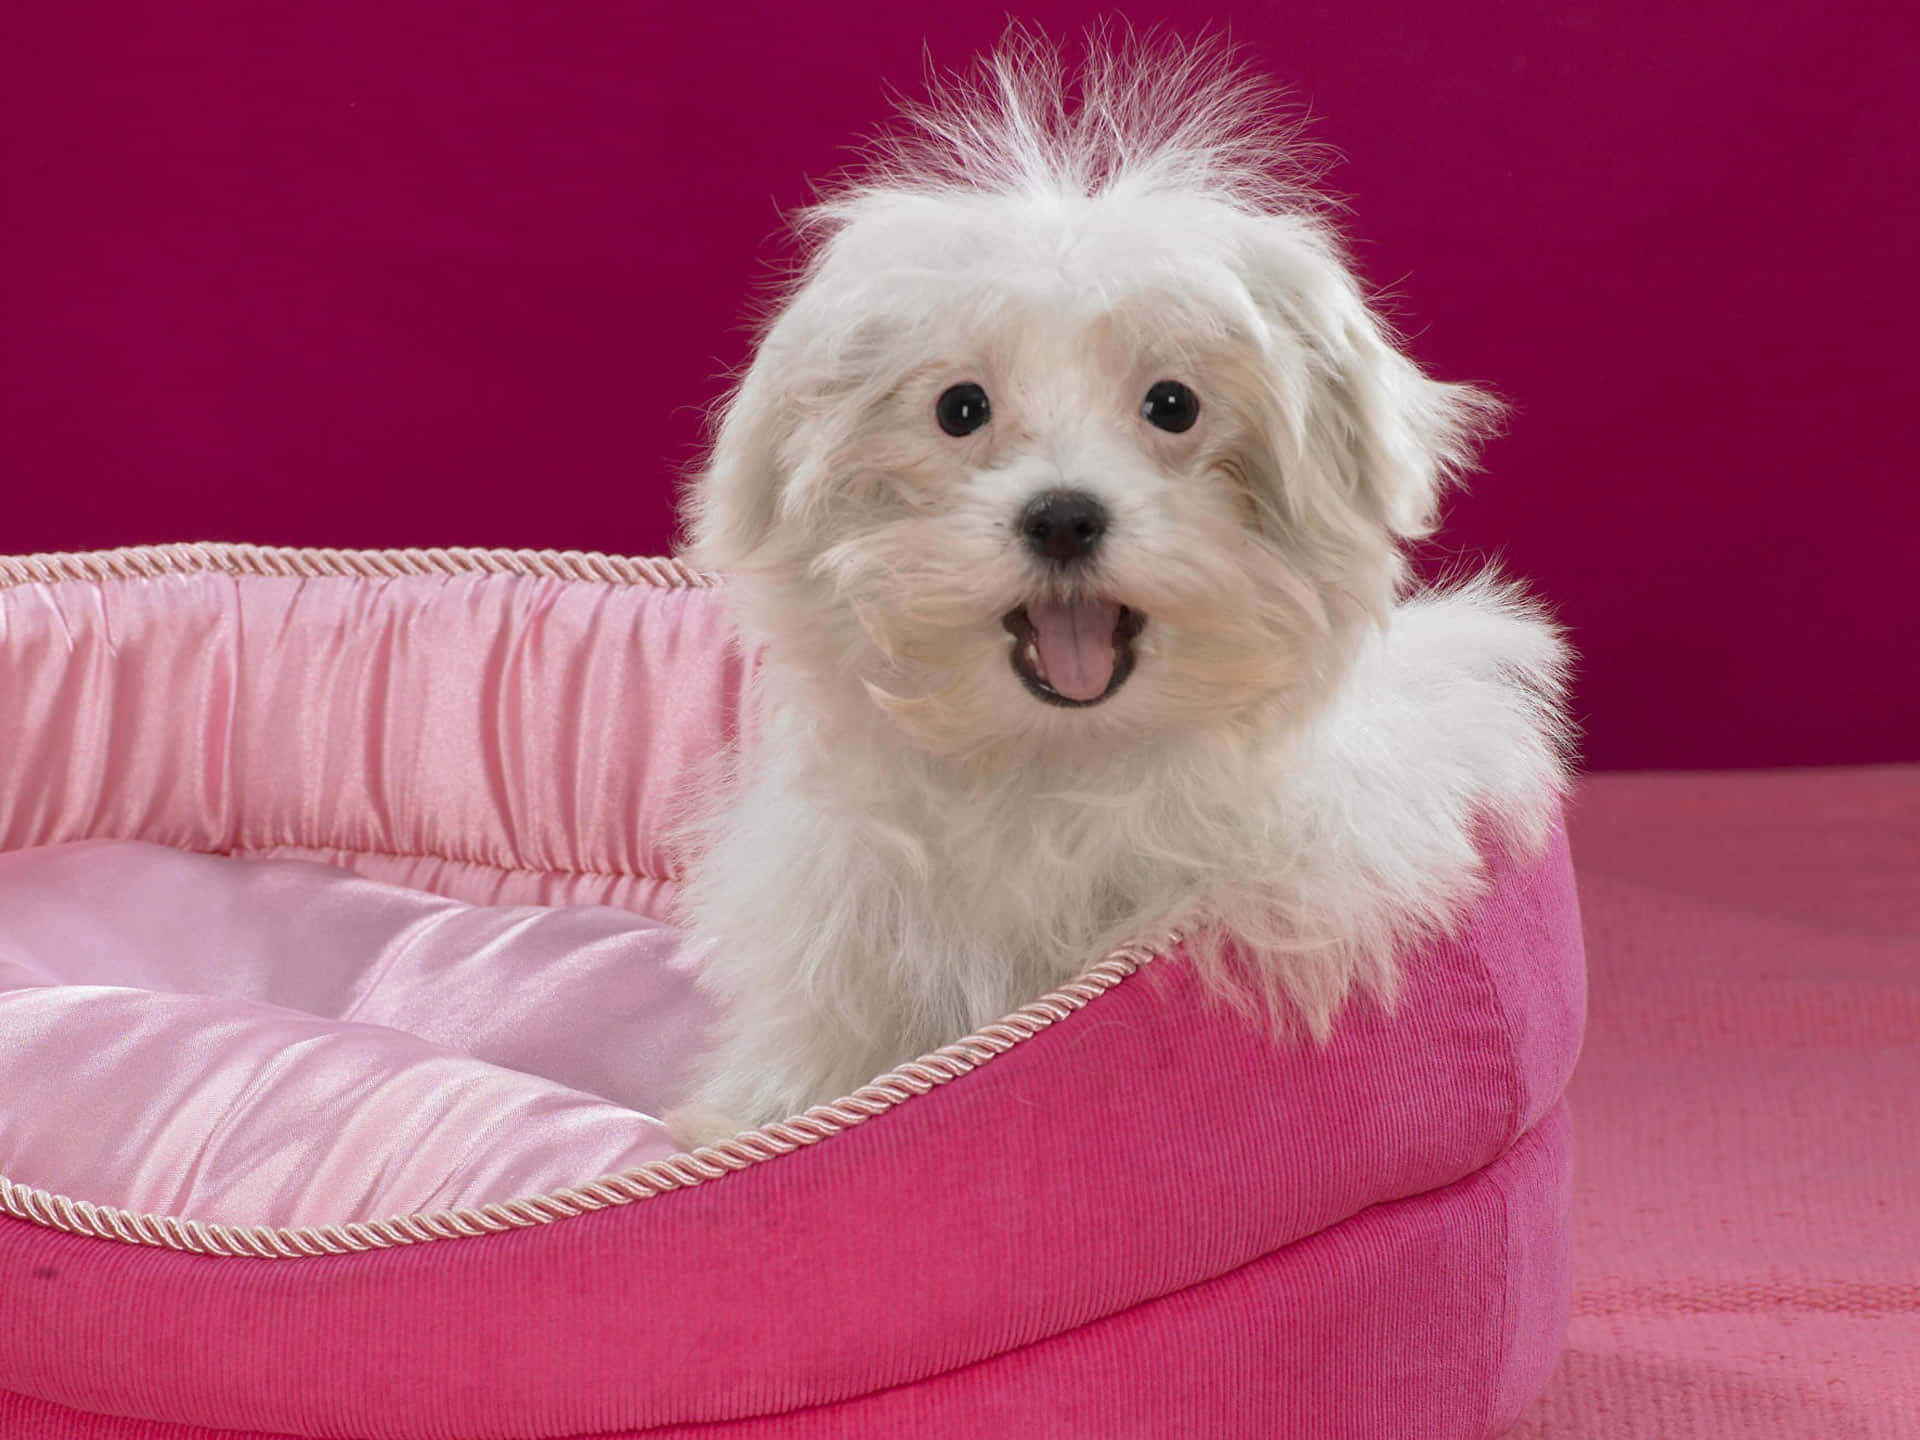 Unpequeño Perro Blanco Sentado En Una Cama De Perro Rosa Fondo de pantalla